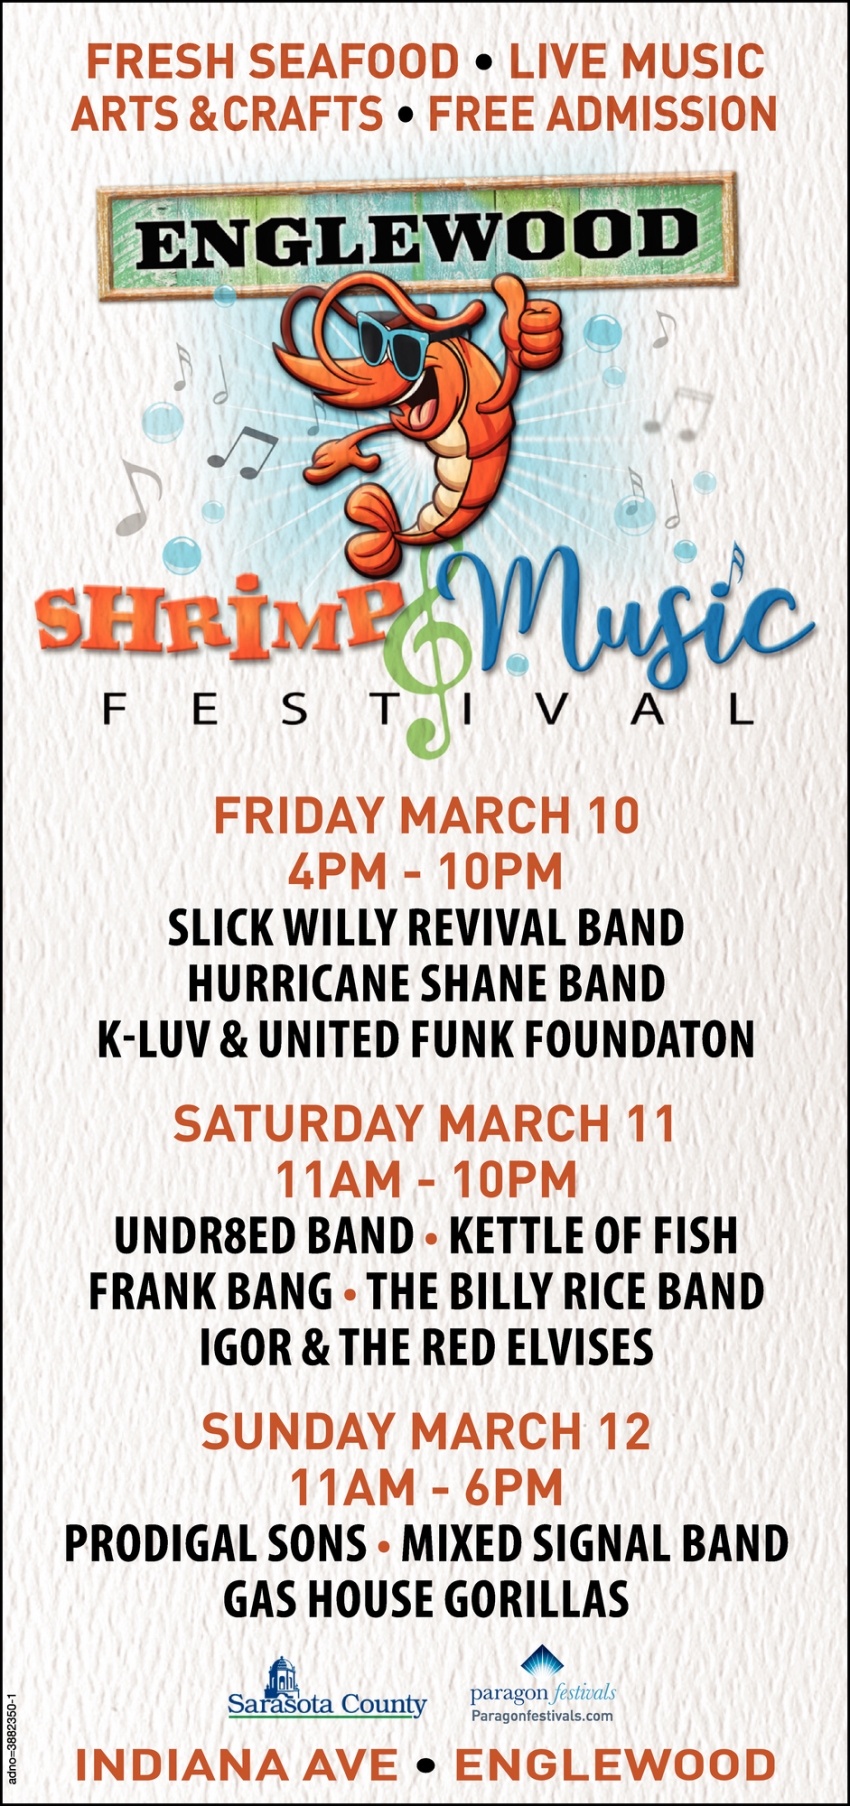 Shrimp & Music Festival